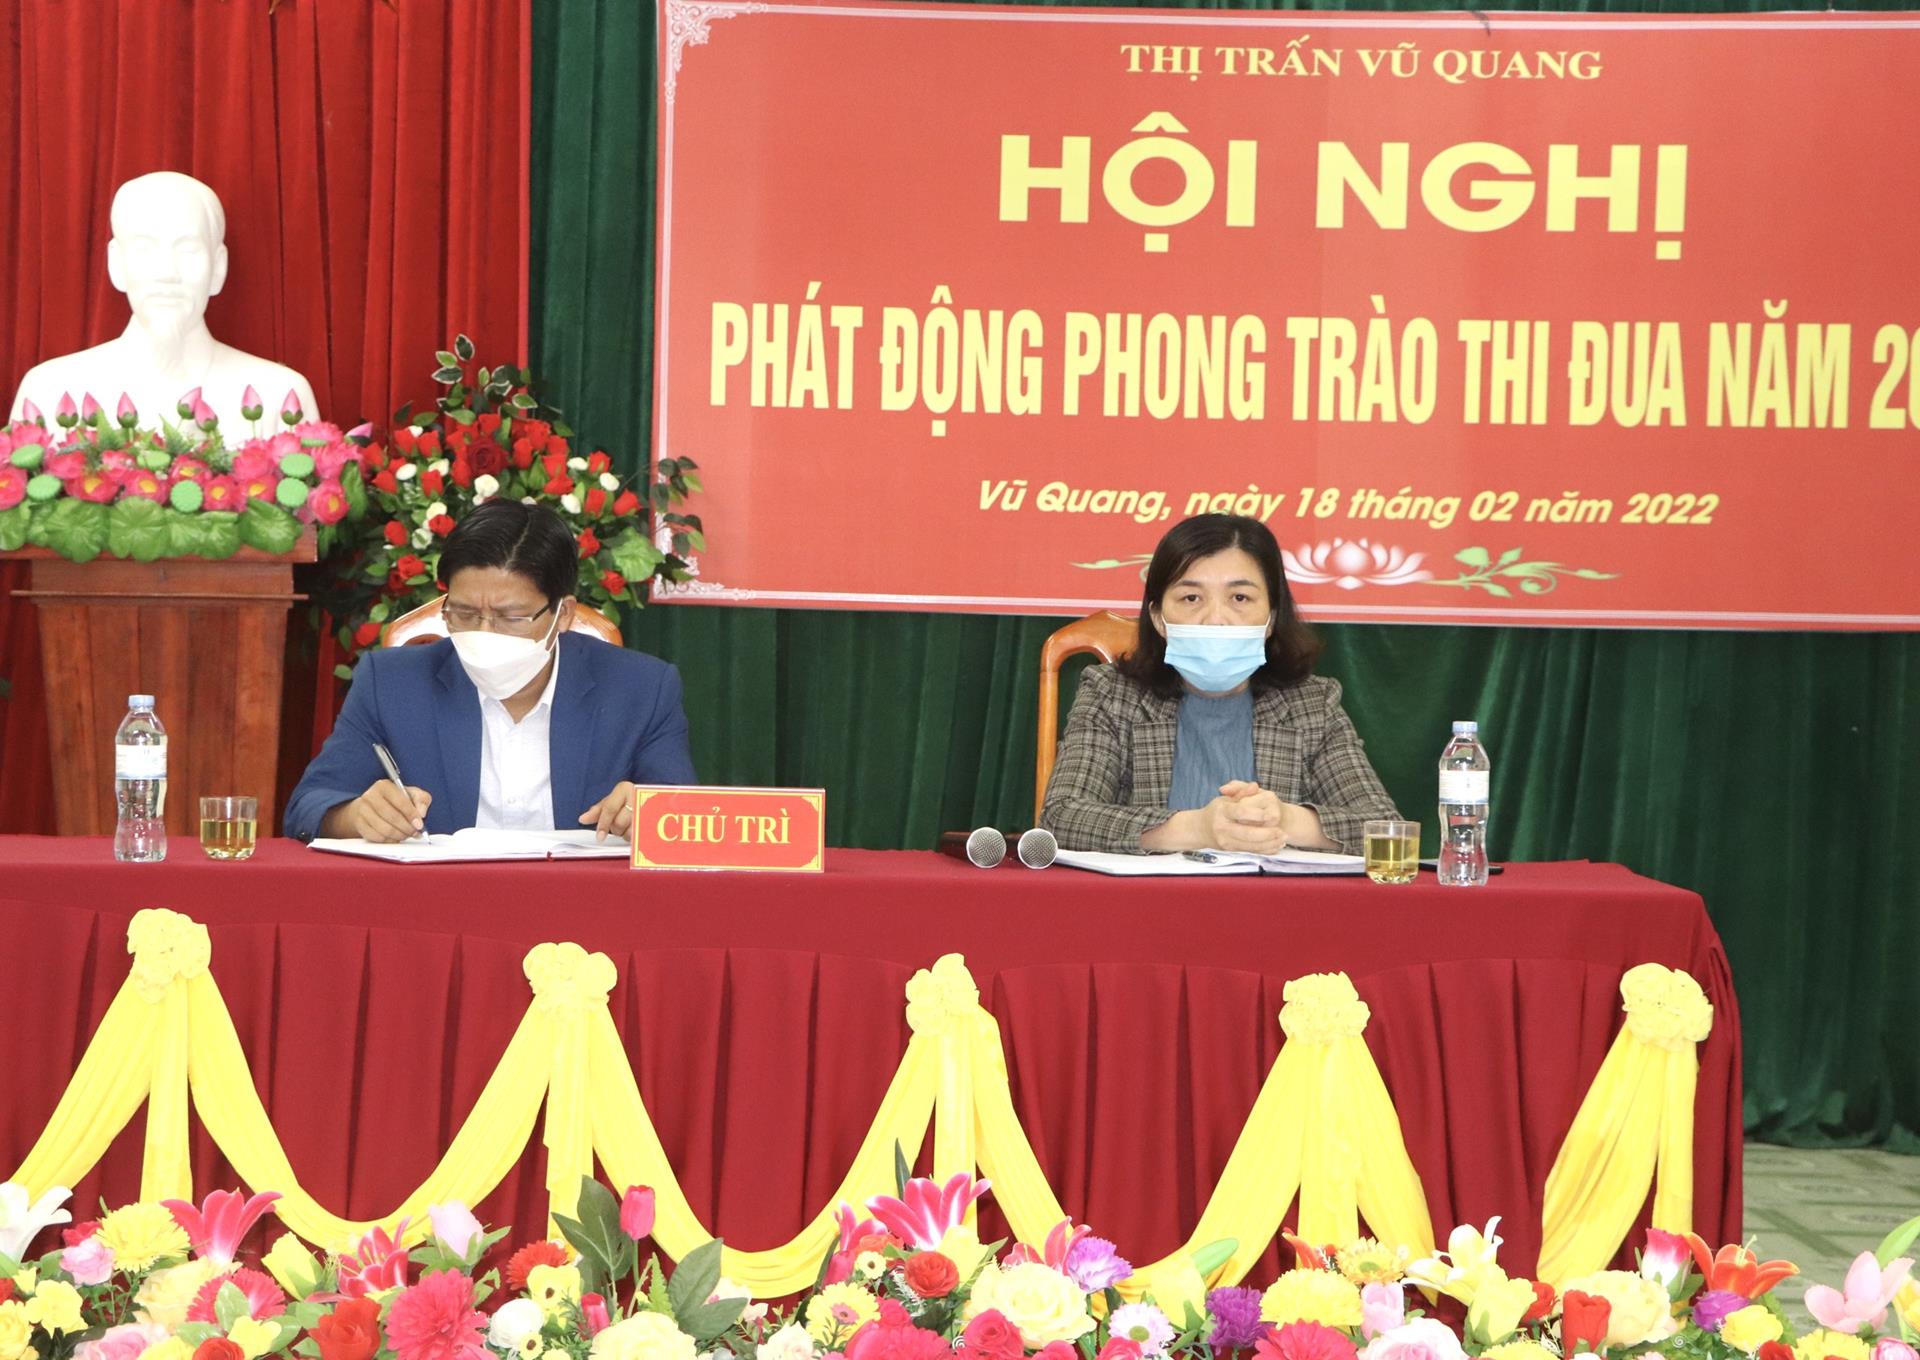 Phát động các phong trào thi đua năm 2022 trên địa bàn Thị trấn Vũ Quang